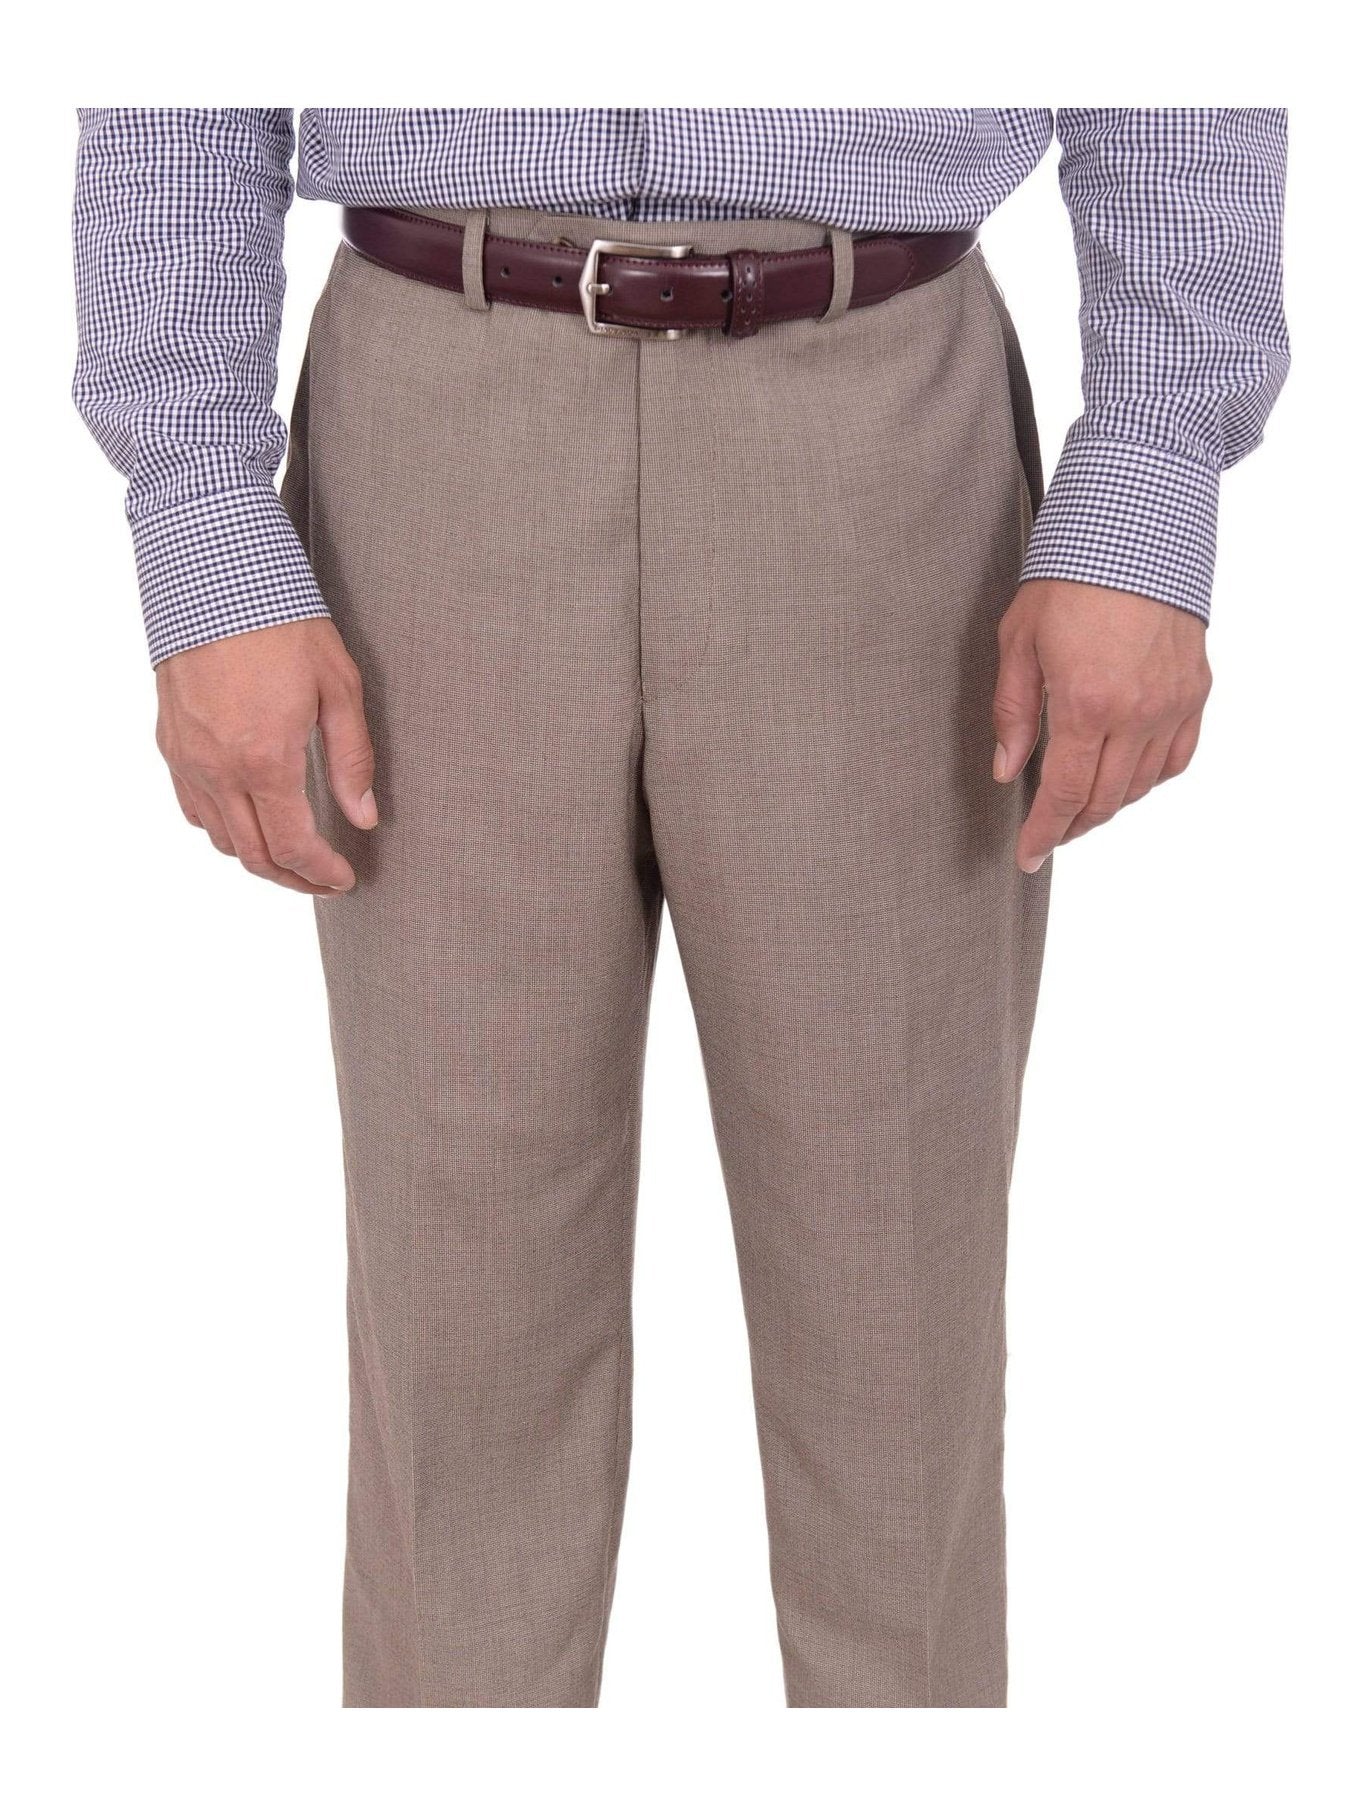 Michael Kors Modern Fit Suit Separates Soft Coat Tan  Mens Sale  Mens  Wearhouse